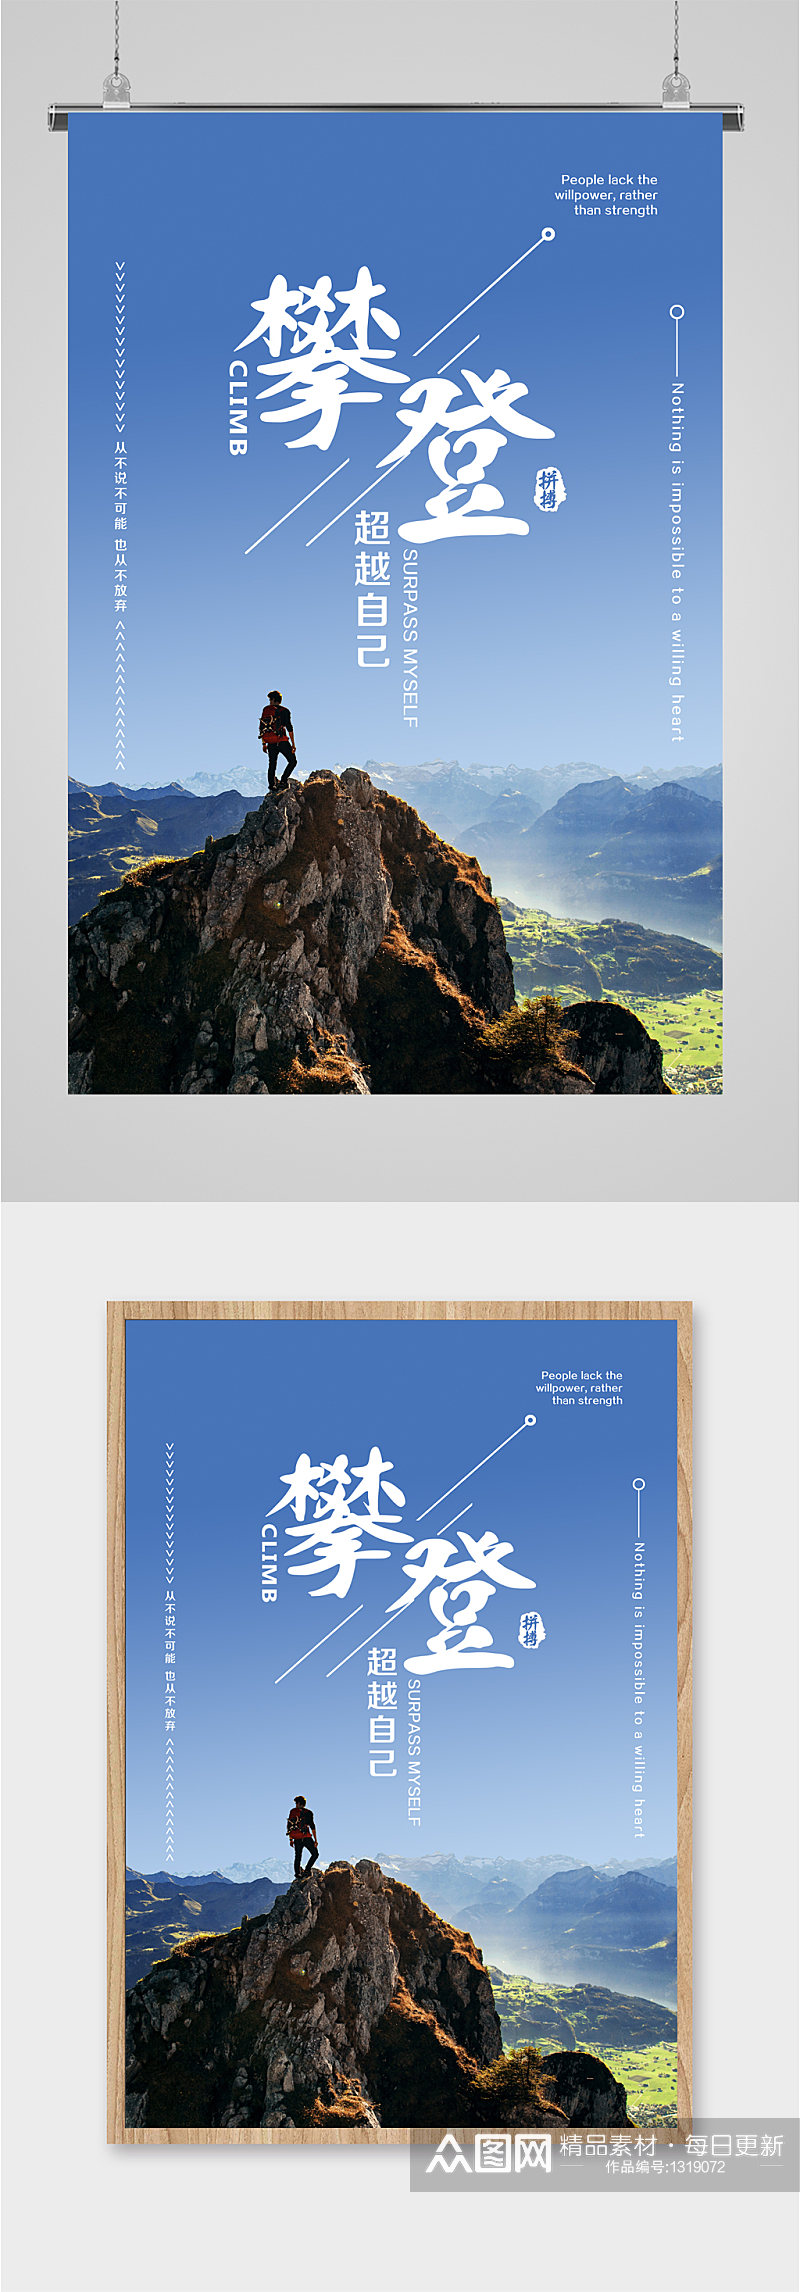 攀登企业励志 攀登者宣传海报海报素材